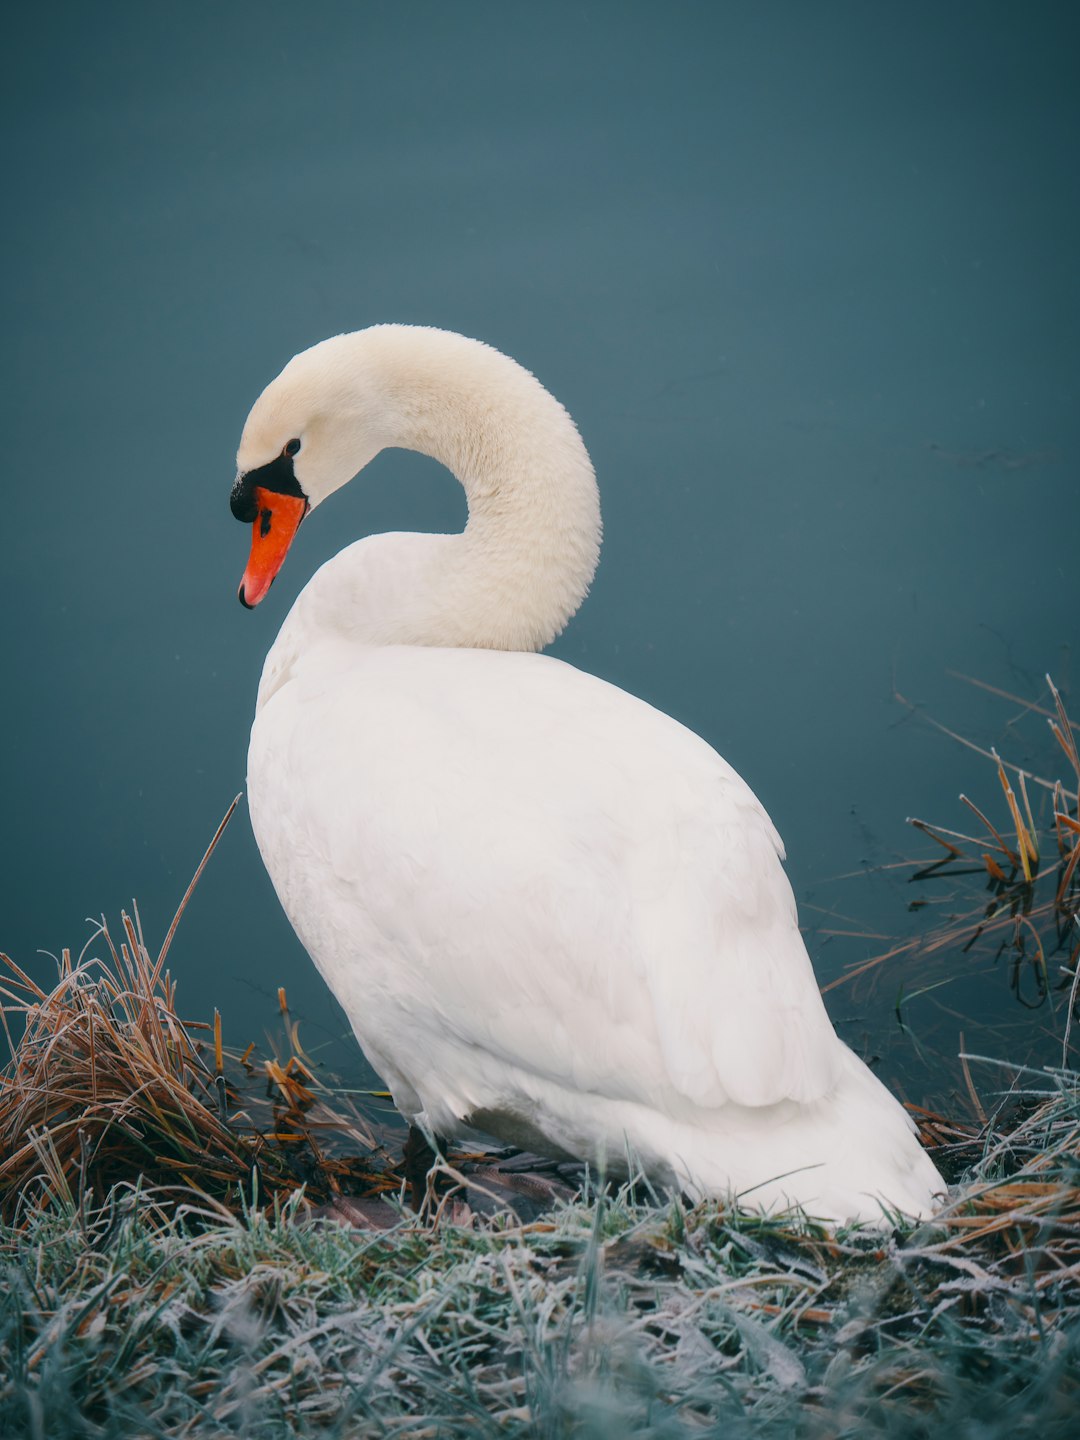 mute swan near body of water